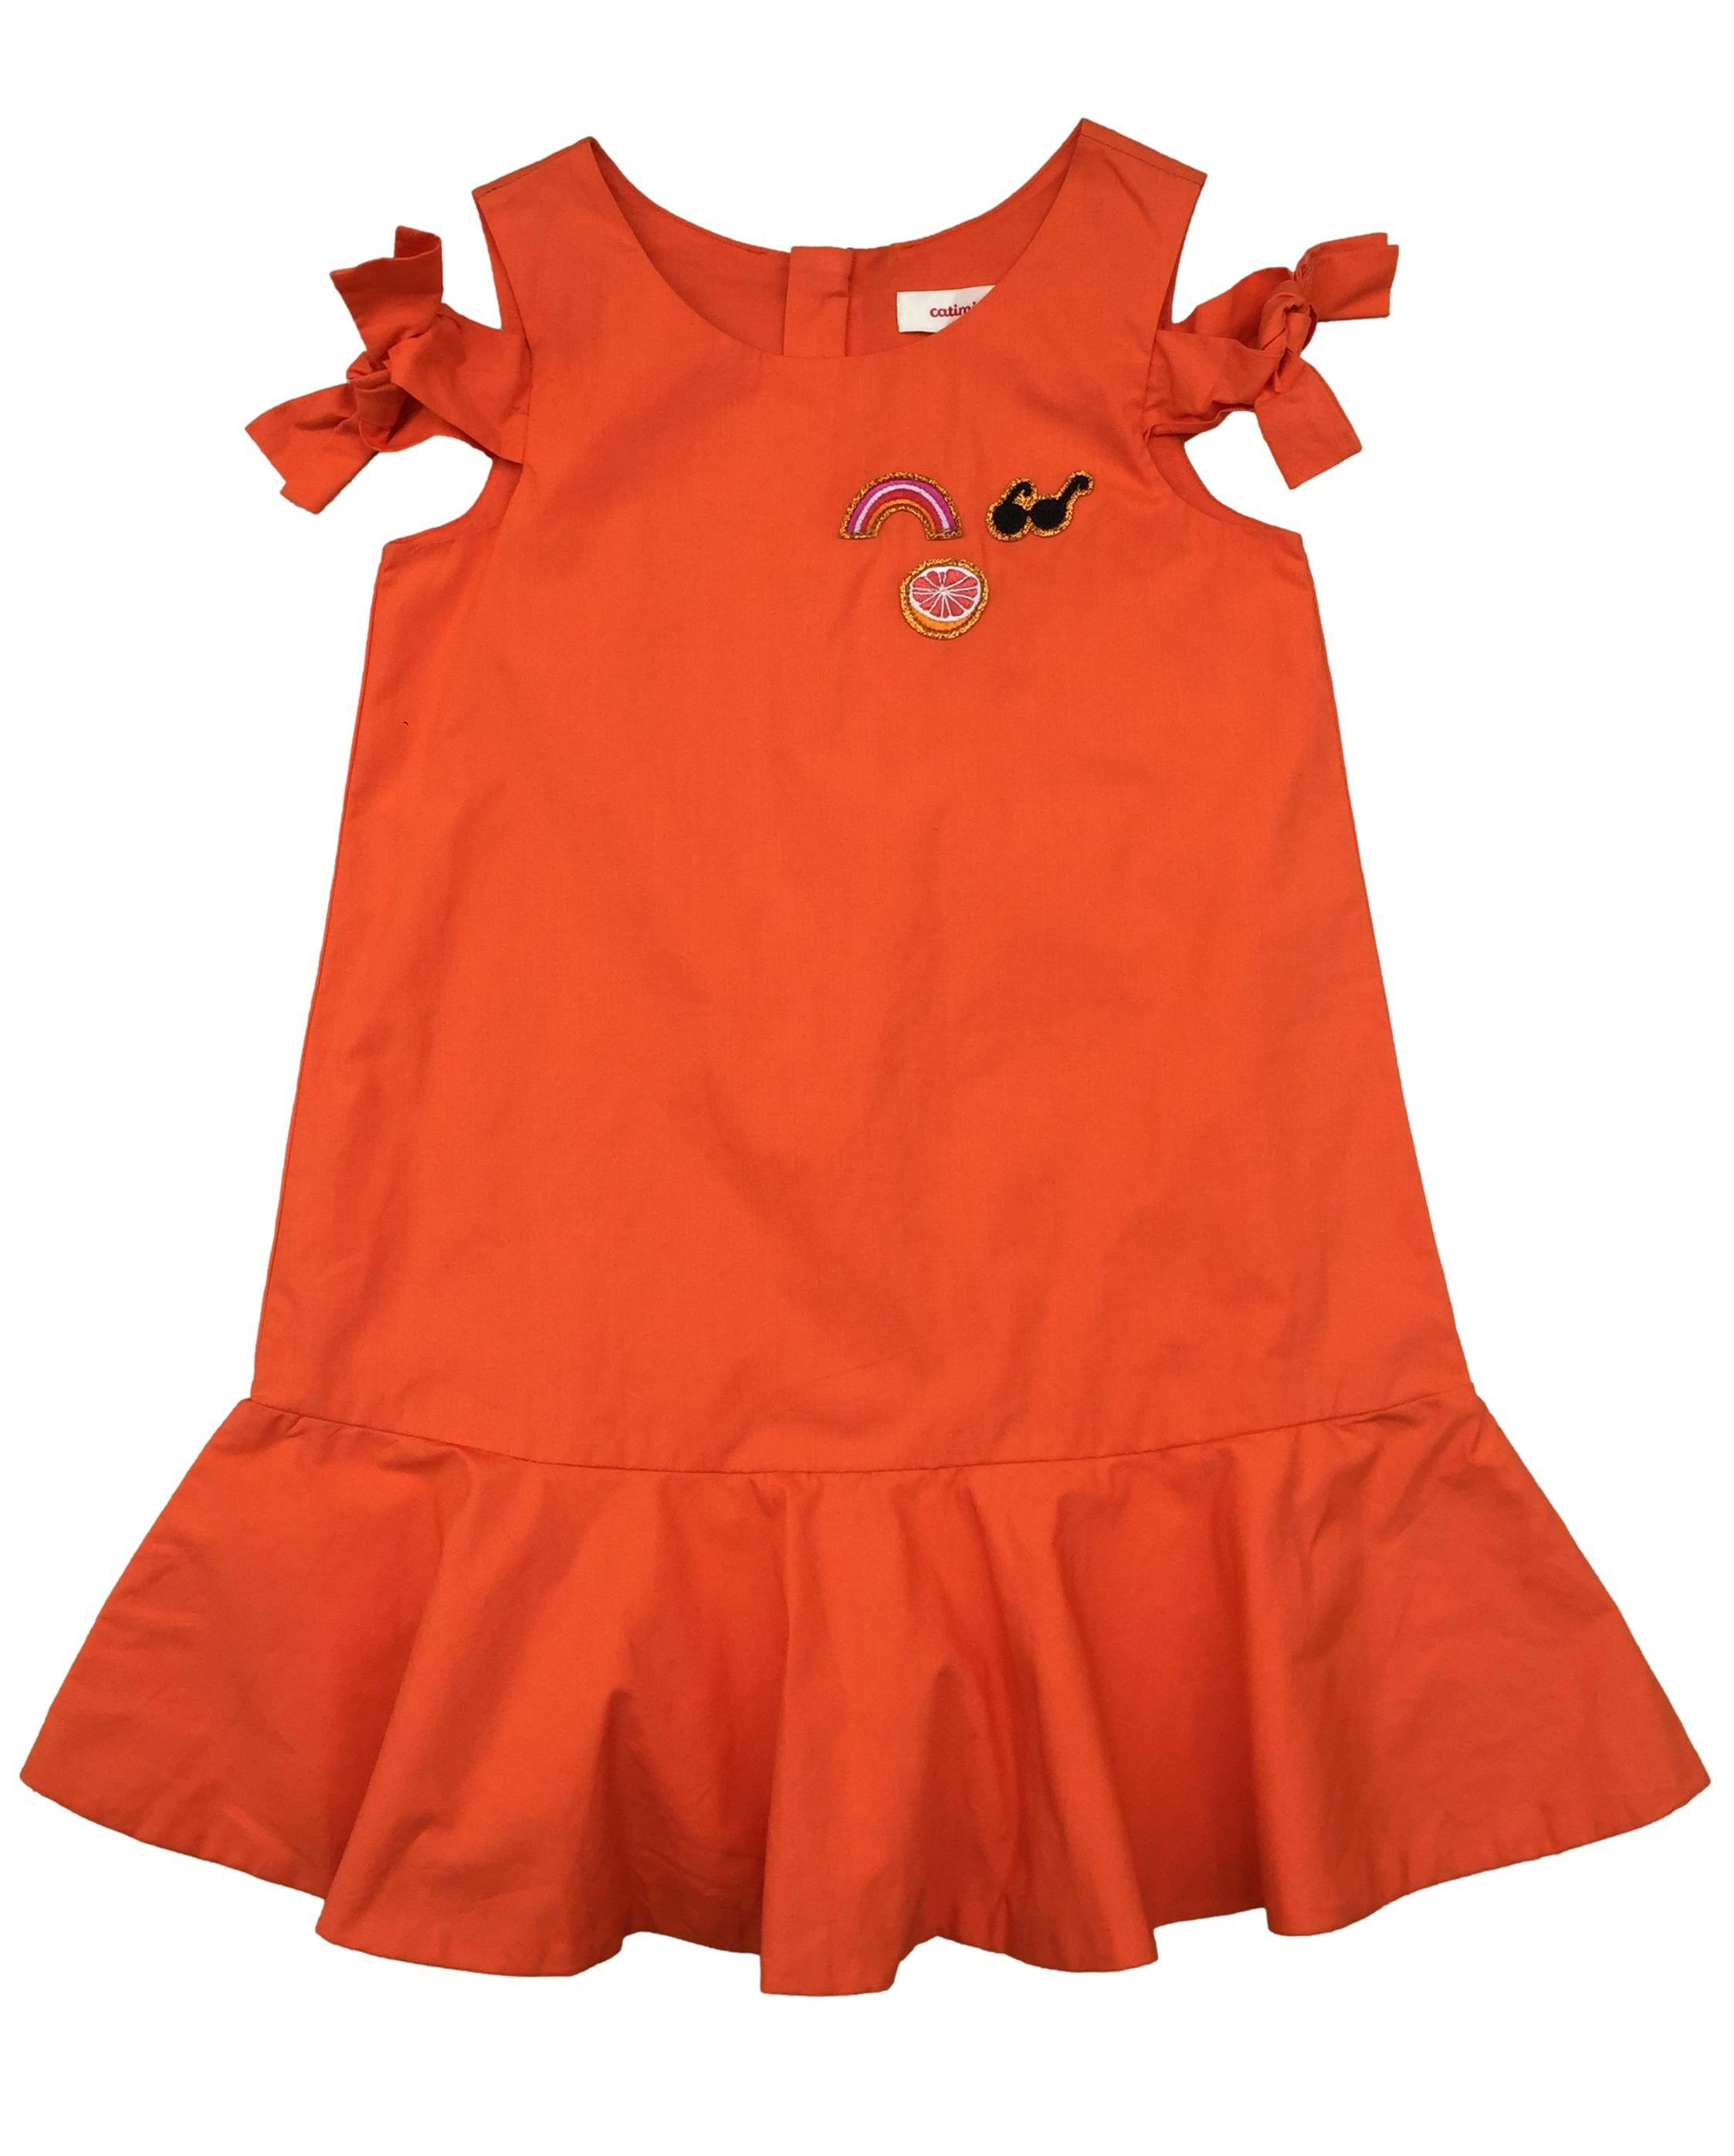 Vestido naranja corte en A Catimini con aplicación de arcoíris, lazo en hombros, cierre posterior invisible. Nuevo, con etiqueta